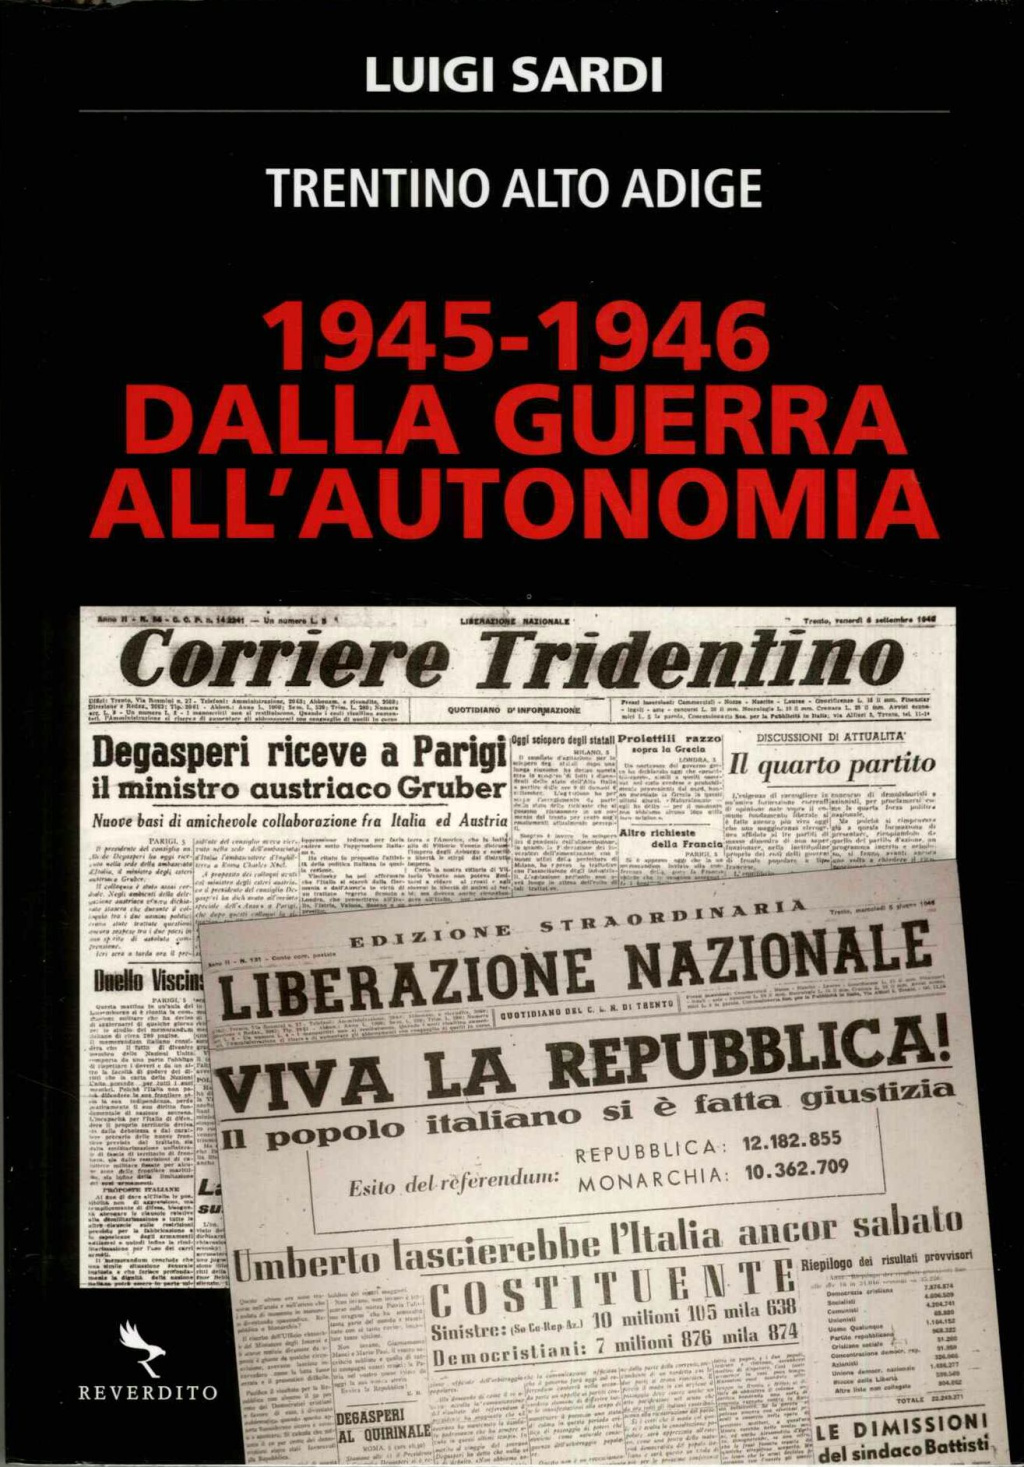 Trentino Alto Adige 1945-1946. Dalla guerra all'autonomia